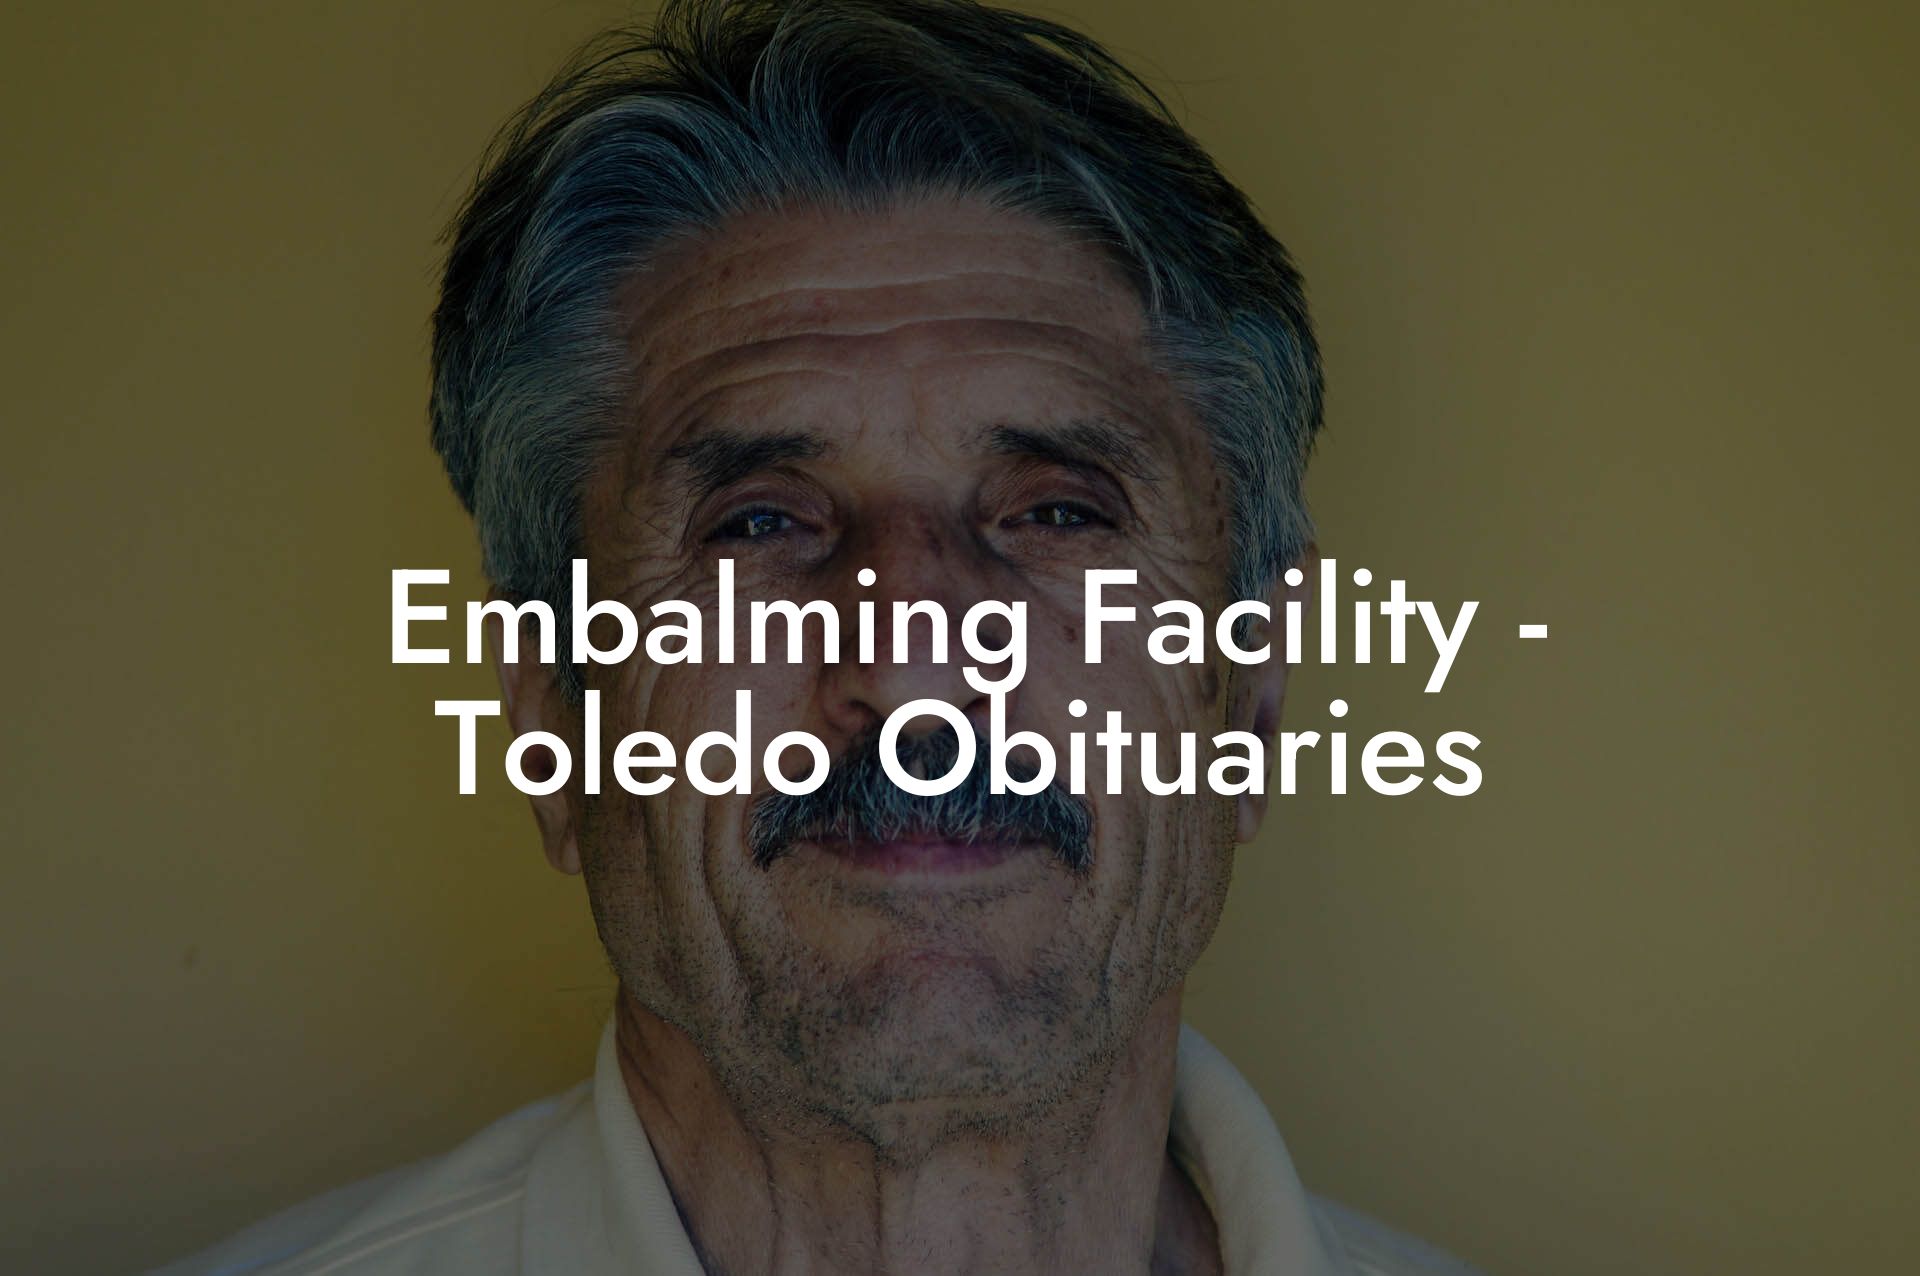 Embalming Facility - Toledo Obituaries